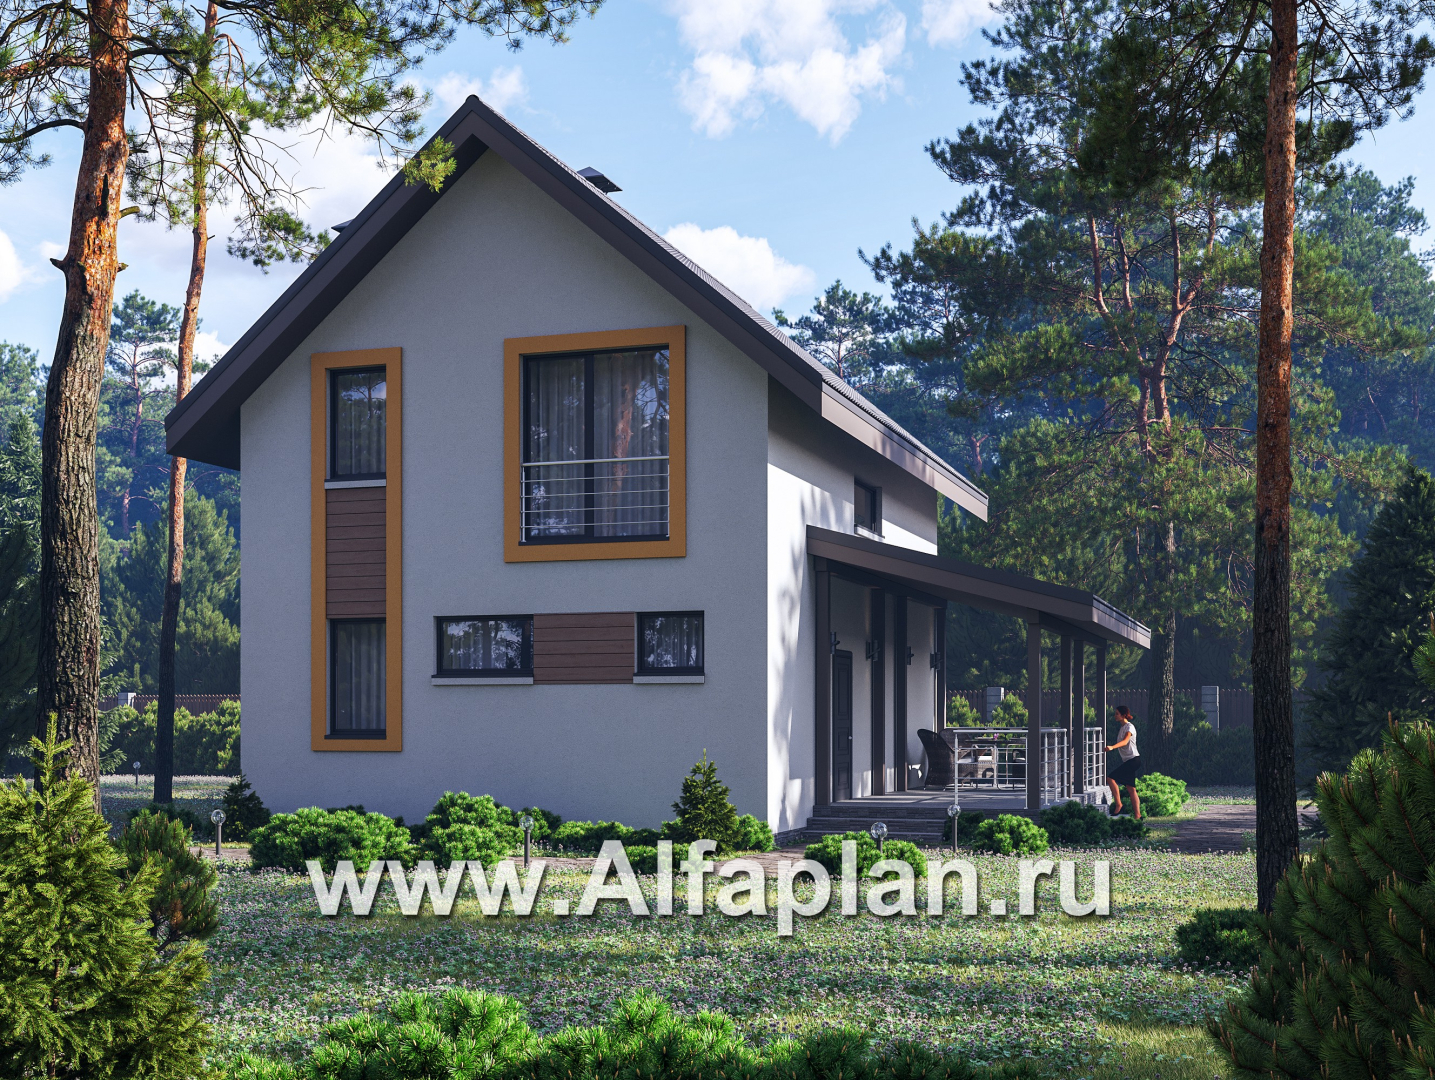 Проекты домов Альфаплан - "Викинг" - проект дома, 2 этажа, с сауной и с террасой сбоку, в скандинавском стиле - основное изображение